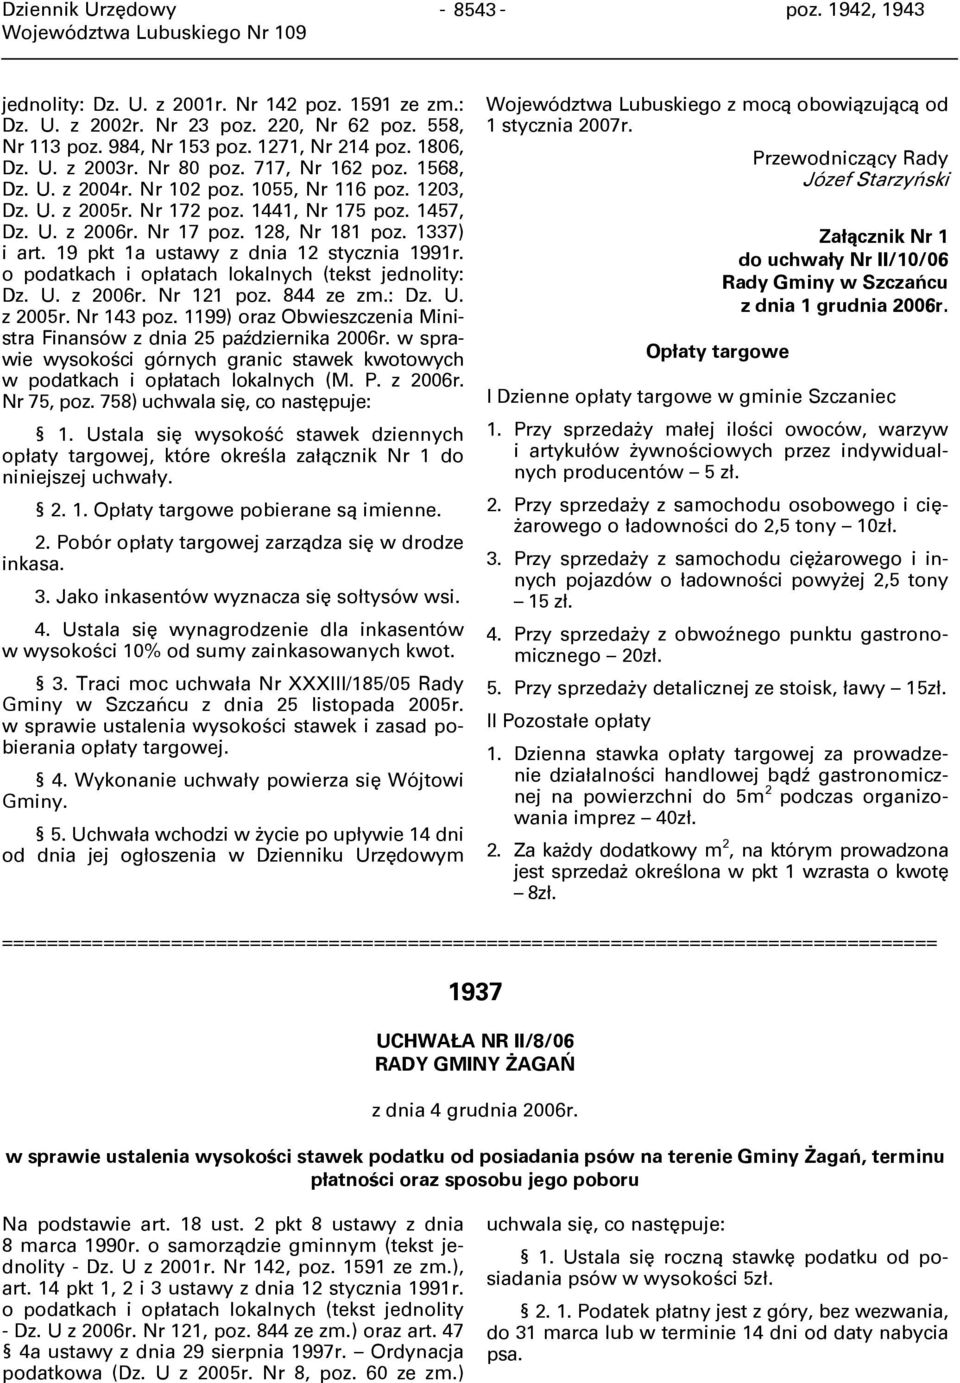 1337) i art. 19 pkt 1a ustawy z dnia 12 stycznia 1991r. o podatkach i opłatach lokalnych (tekst jednolity: Dz. U. z 2006r. Nr 121 poz. 844 ze zm.: Dz. U. z 2005r. Nr 143 poz.